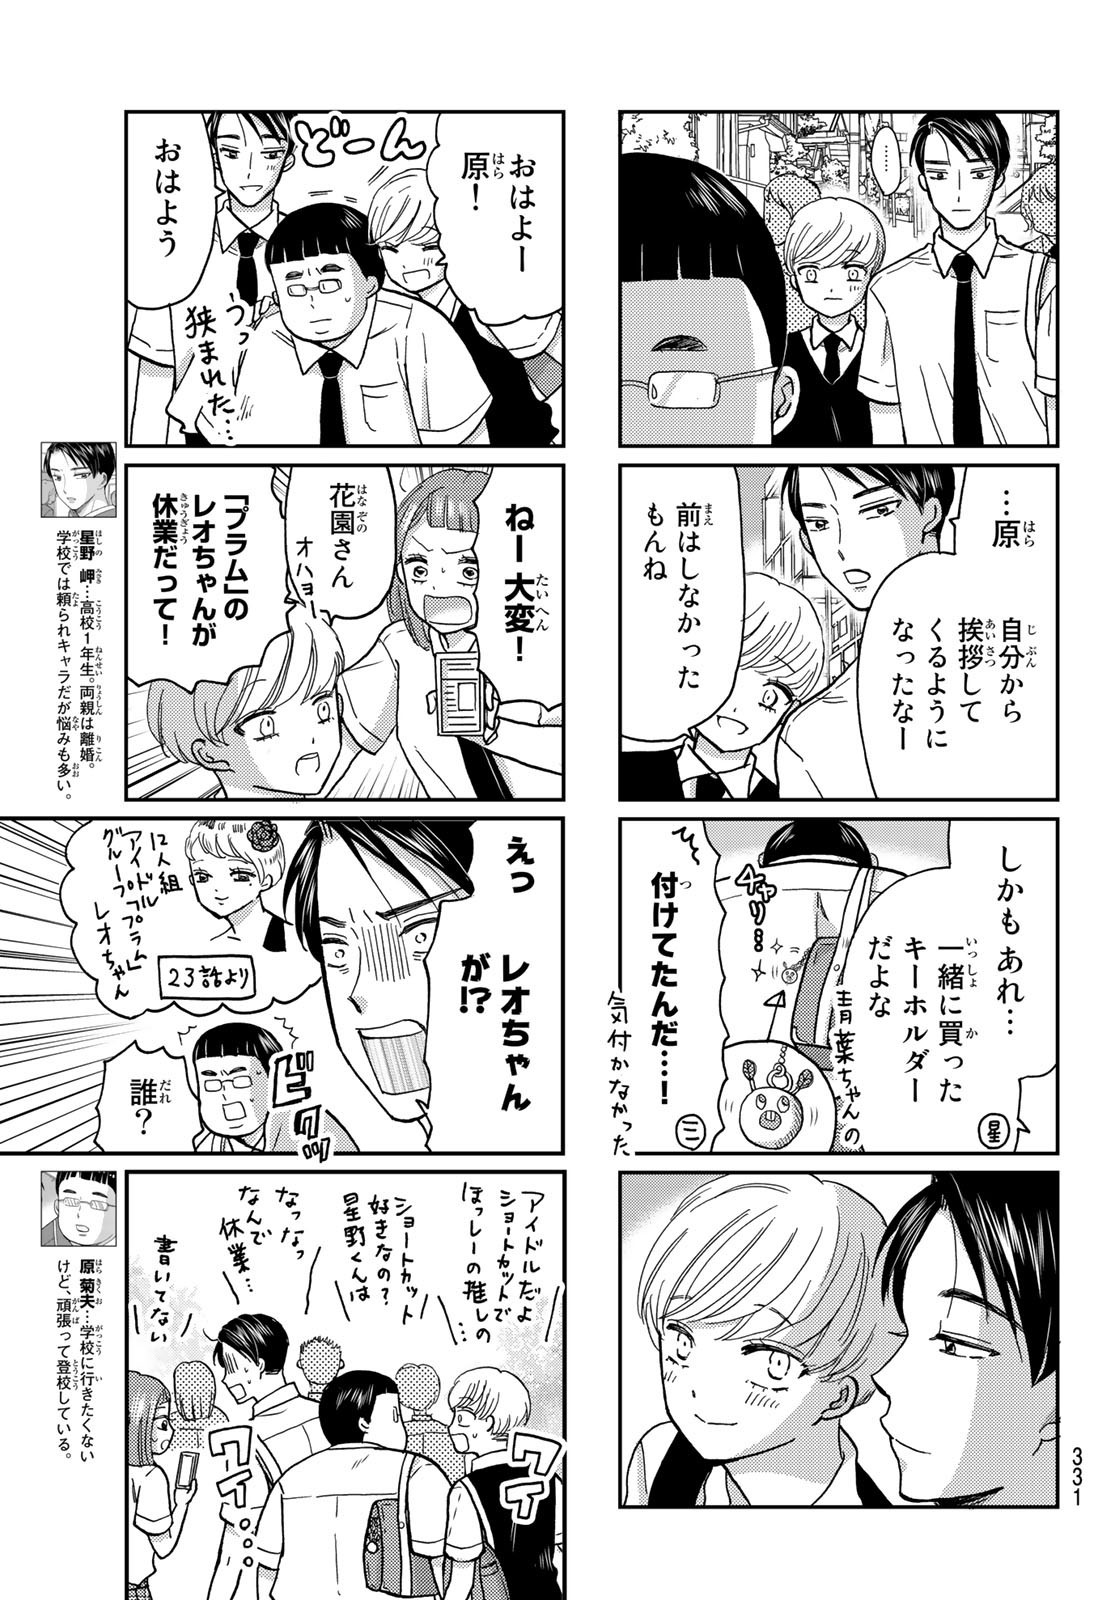 Hinata-san, Hoshino desu. - Chapter 034 - Page 3